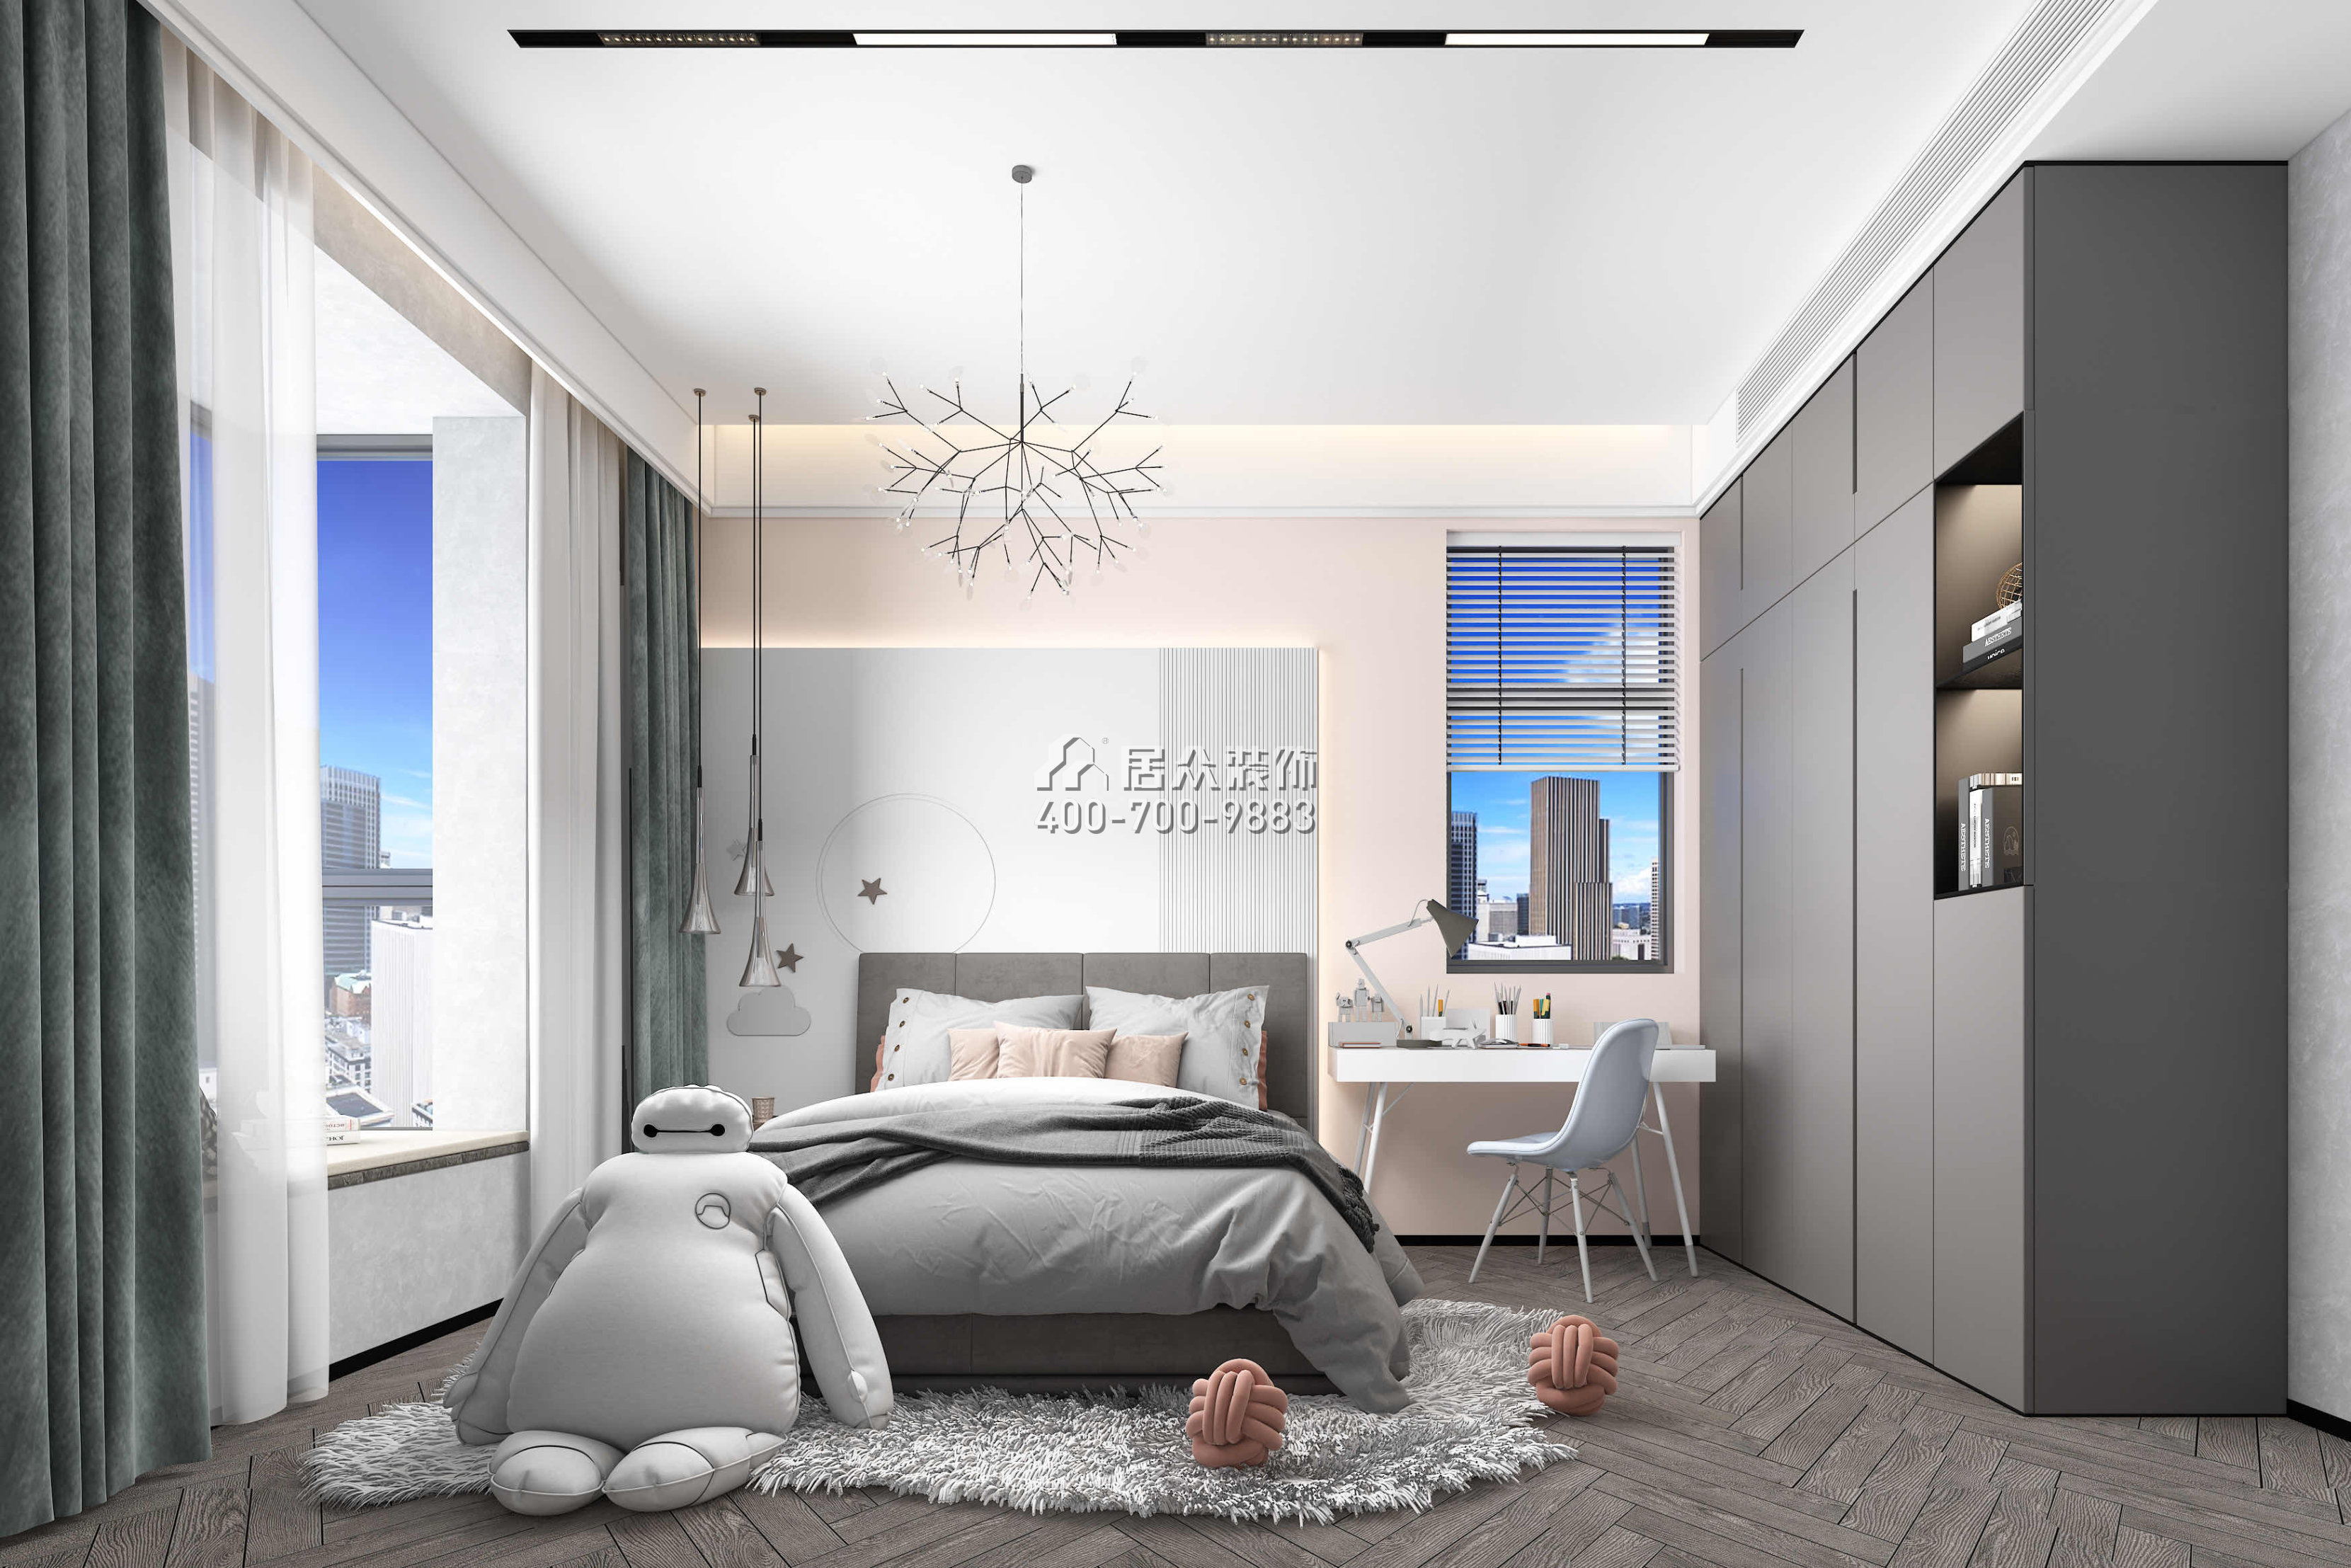 發展興苑270平方米現代簡約風格平層戶型臥室裝修效果圖